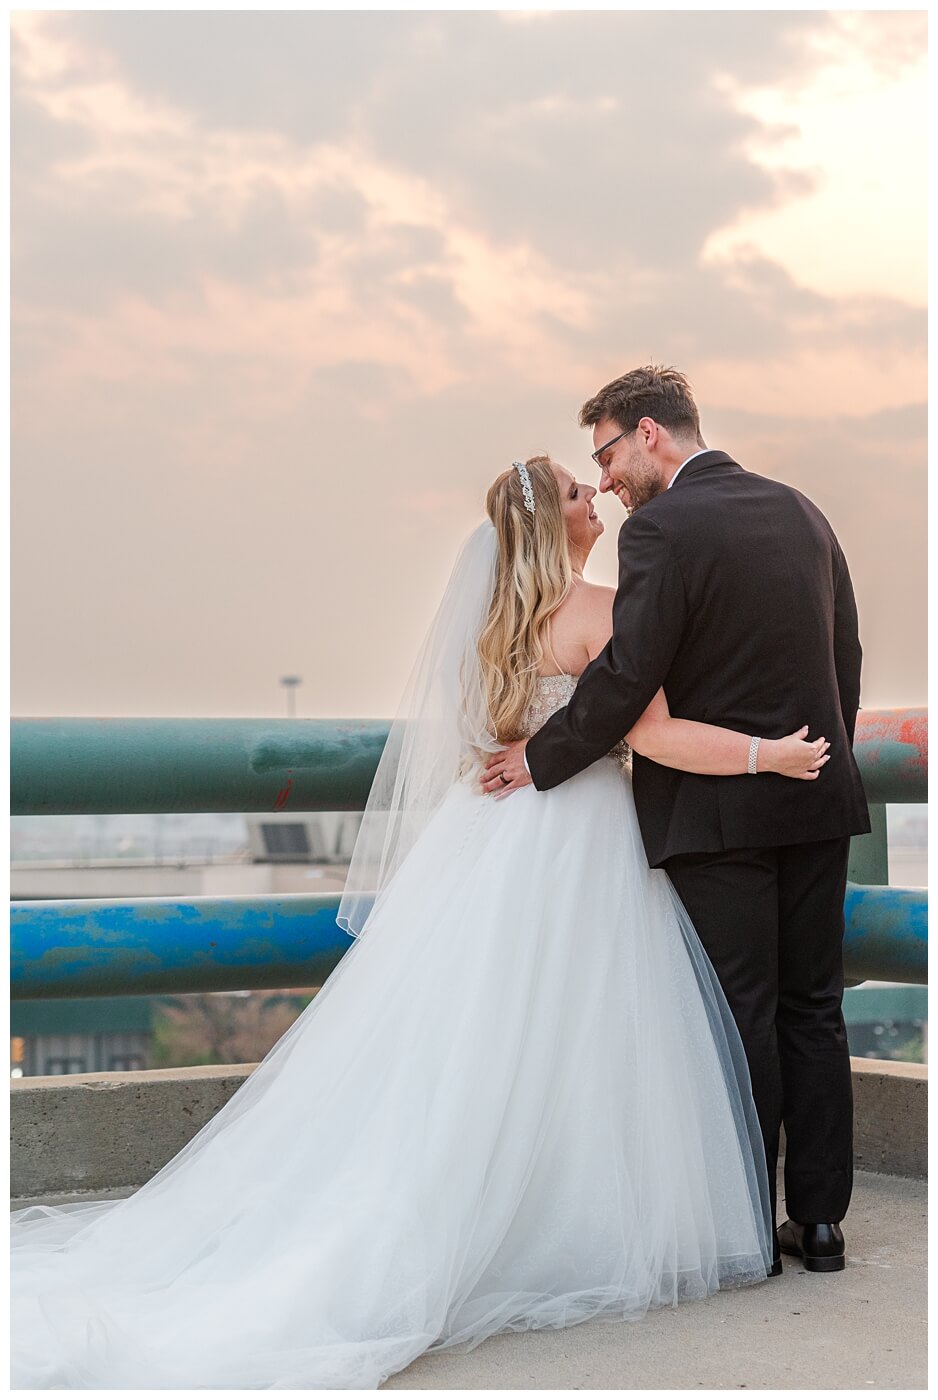 Brett & Rachelle - Delta Regina Wedding - 22 - Couple's Kiss at Sunset on Parkade roof